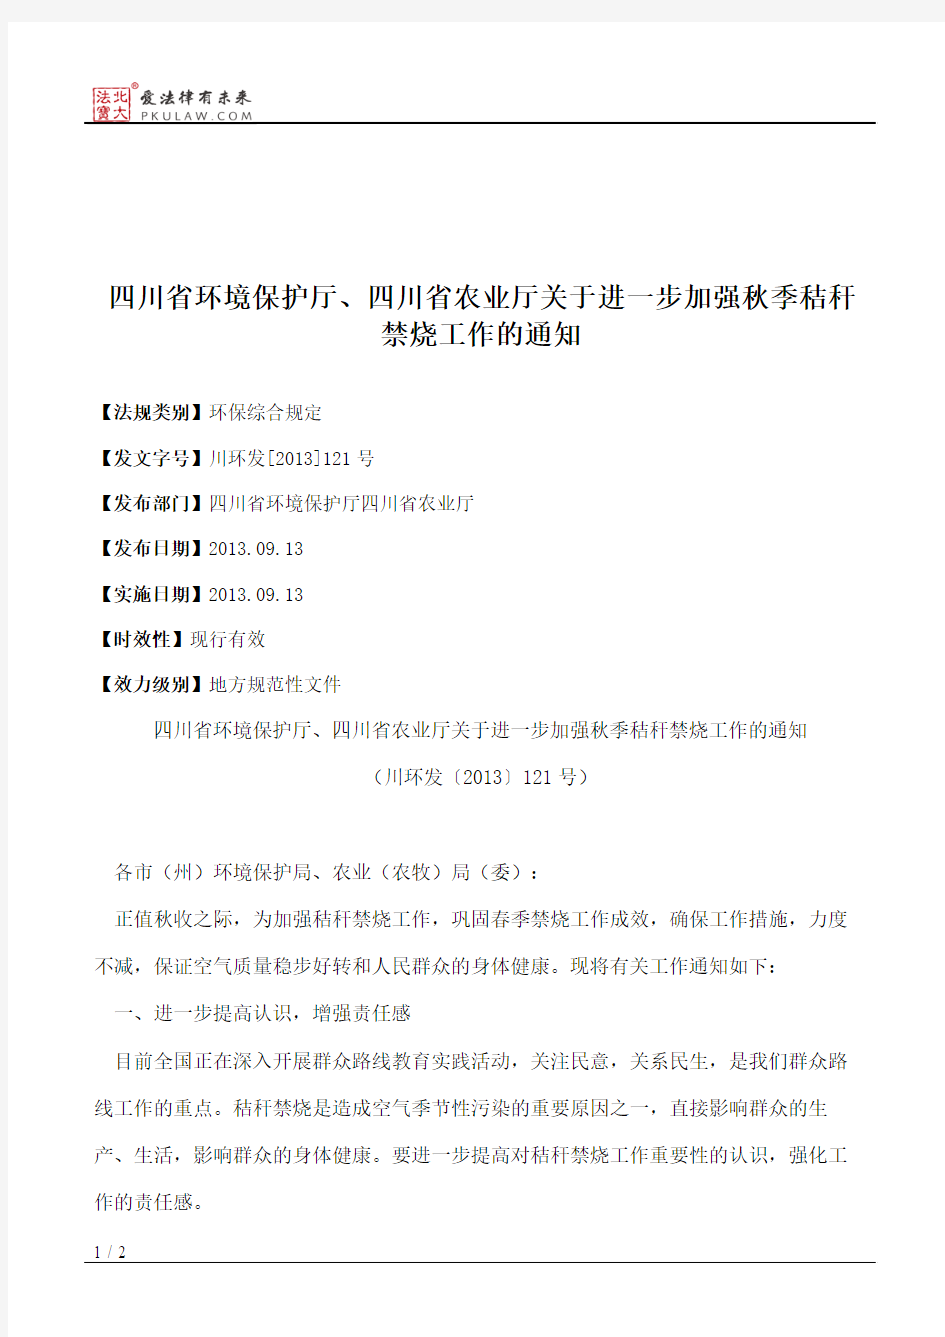 四川省环境保护厅、四川省农业厅关于进一步加强秋季秸秆禁烧工作的通知